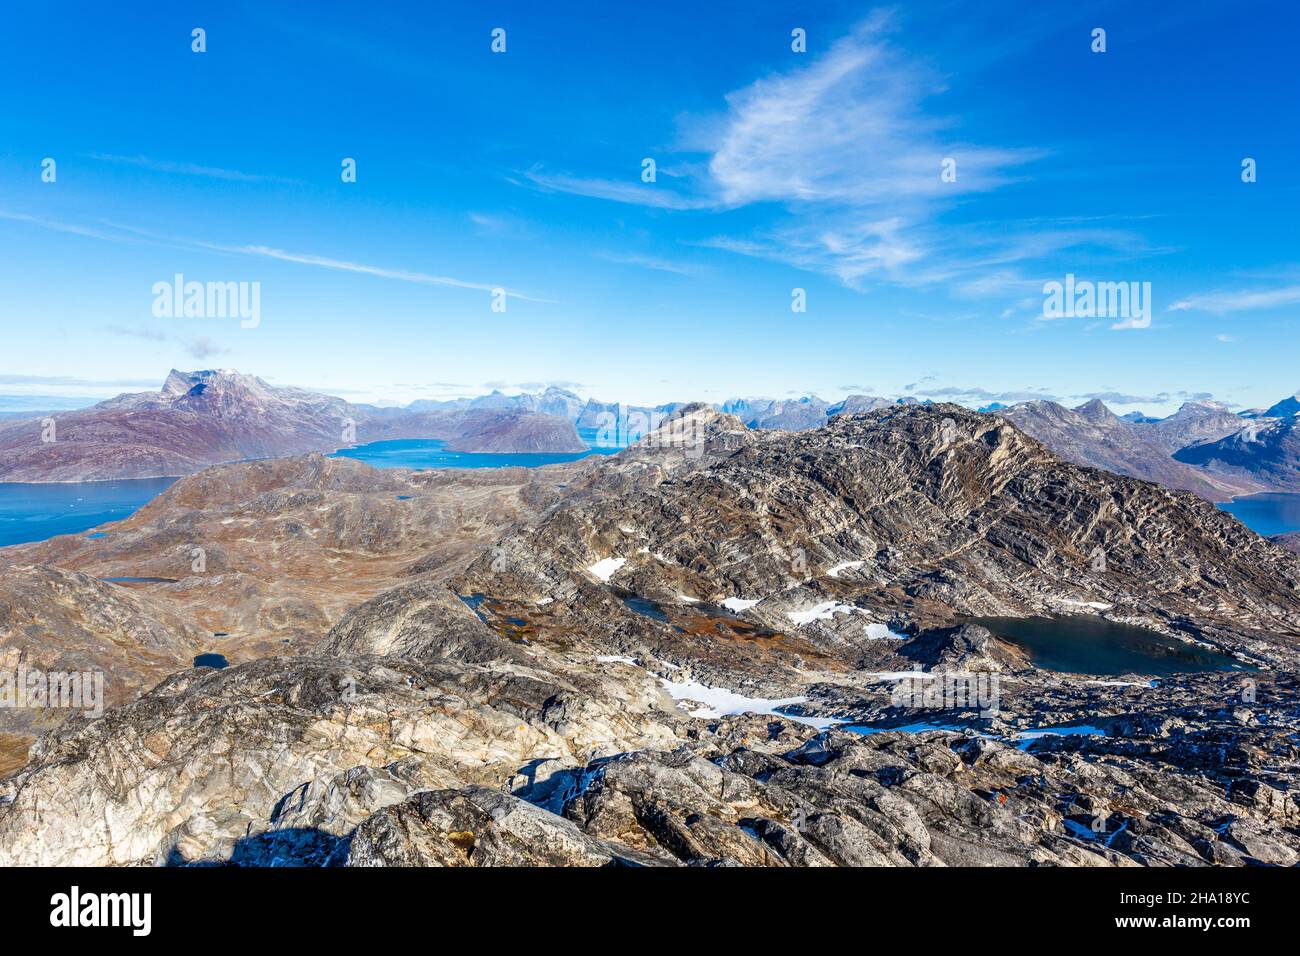 Vista al fiordo de Nuuk y las montañas circundantes desde la cima de la montaña Store Malena, Groenlandia Foto de stock